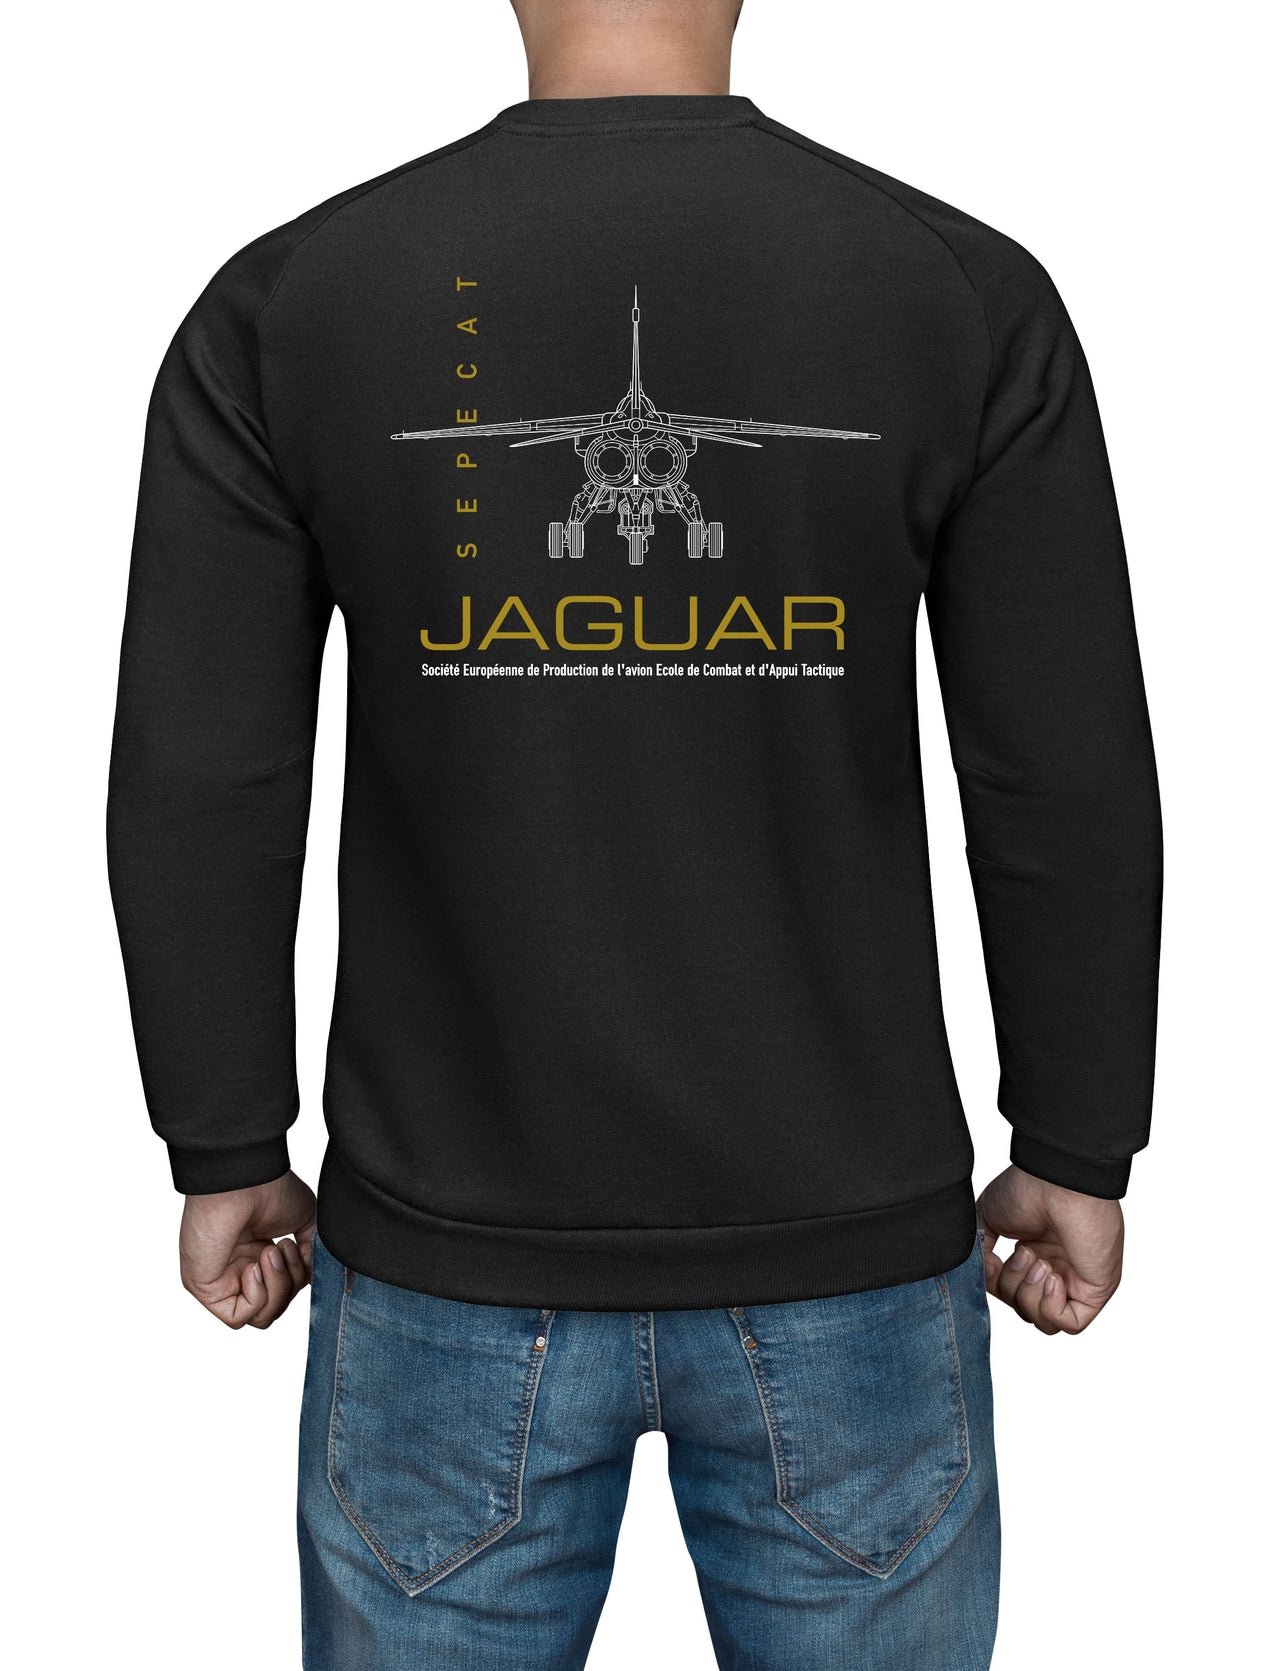 Jaguar - Sweat Shirt